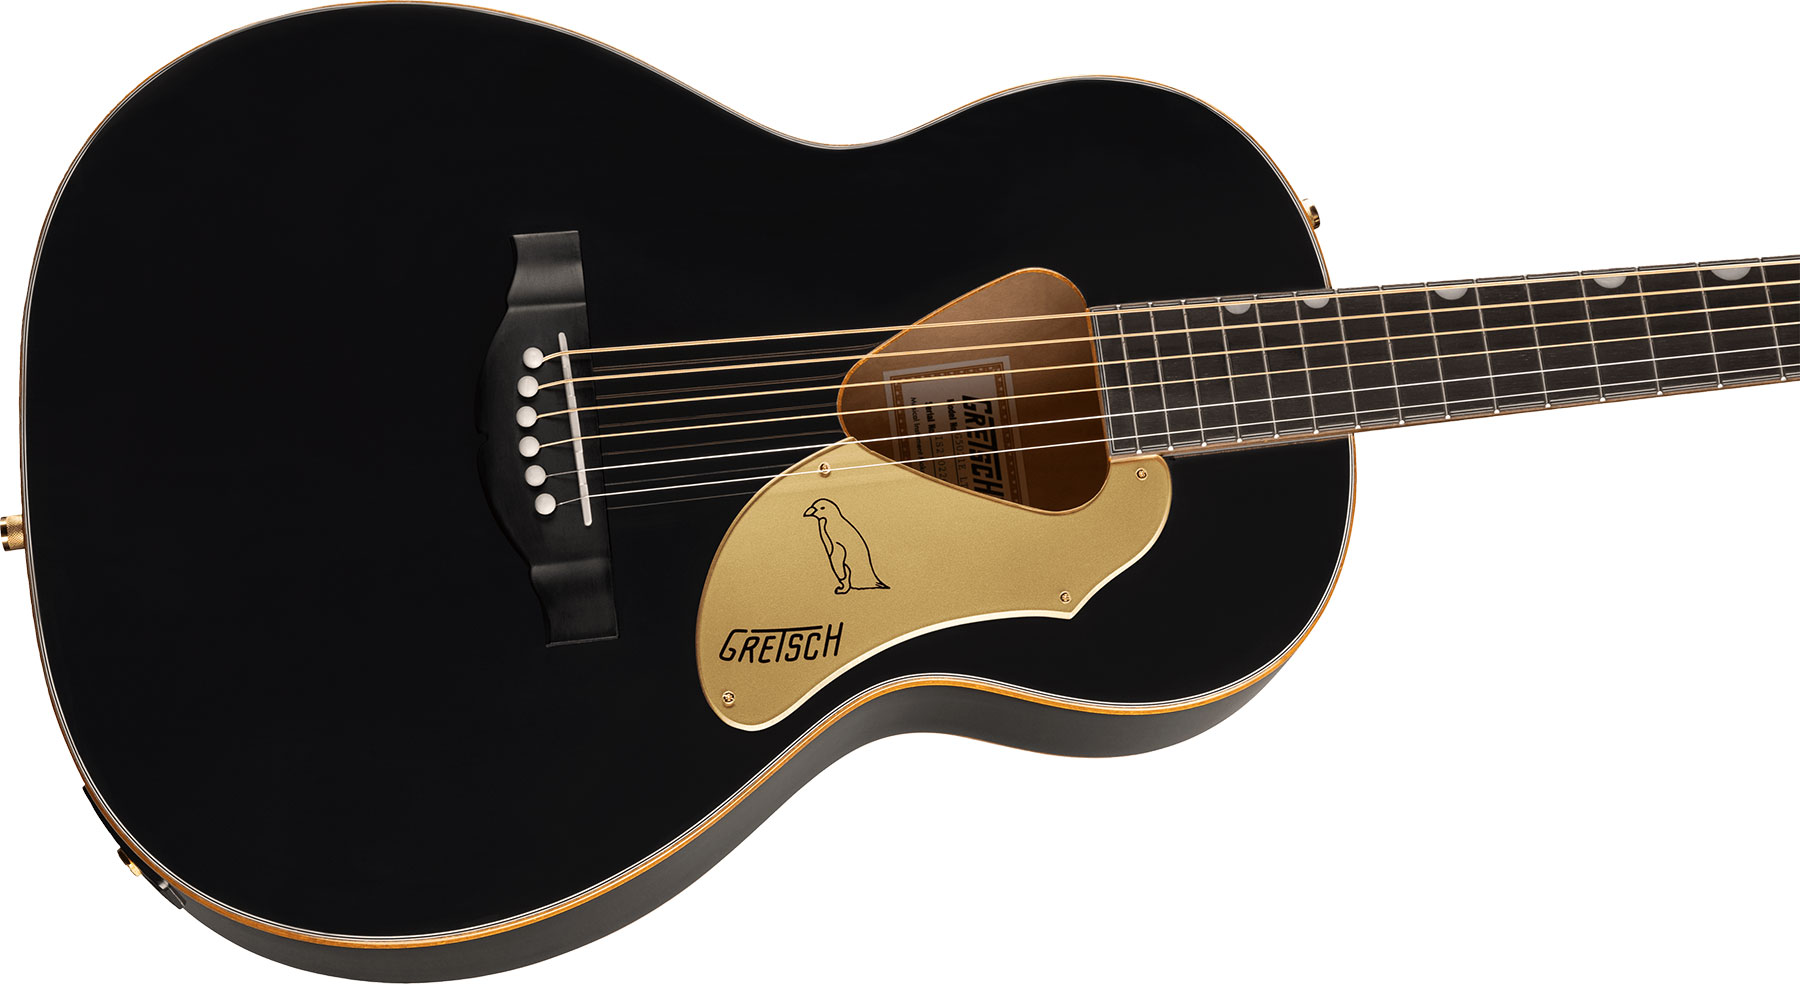 Gretsch G5021e Rancher Penguin Parlor Epicea Erable Lau - Black - Guitare Electro Acoustique - Variation 2